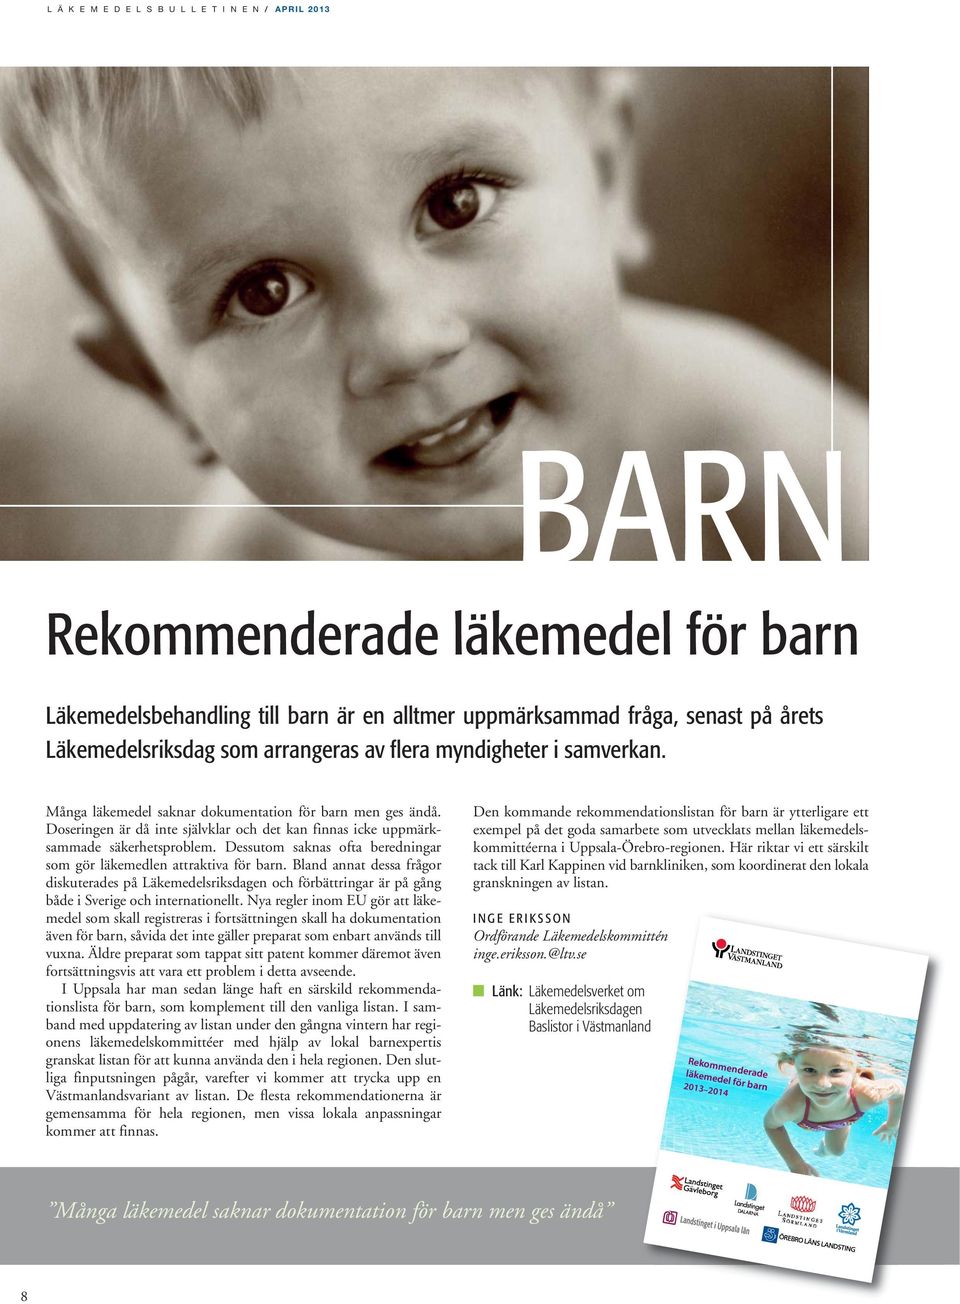 Dessutom saknas ofta beredningar som gör läkemedlen attraktiva för barn. Bland annat dessa frågor diskuterades på Läkemedelsriksdagen och förbättringar är på gång både i Sverige och internationellt.